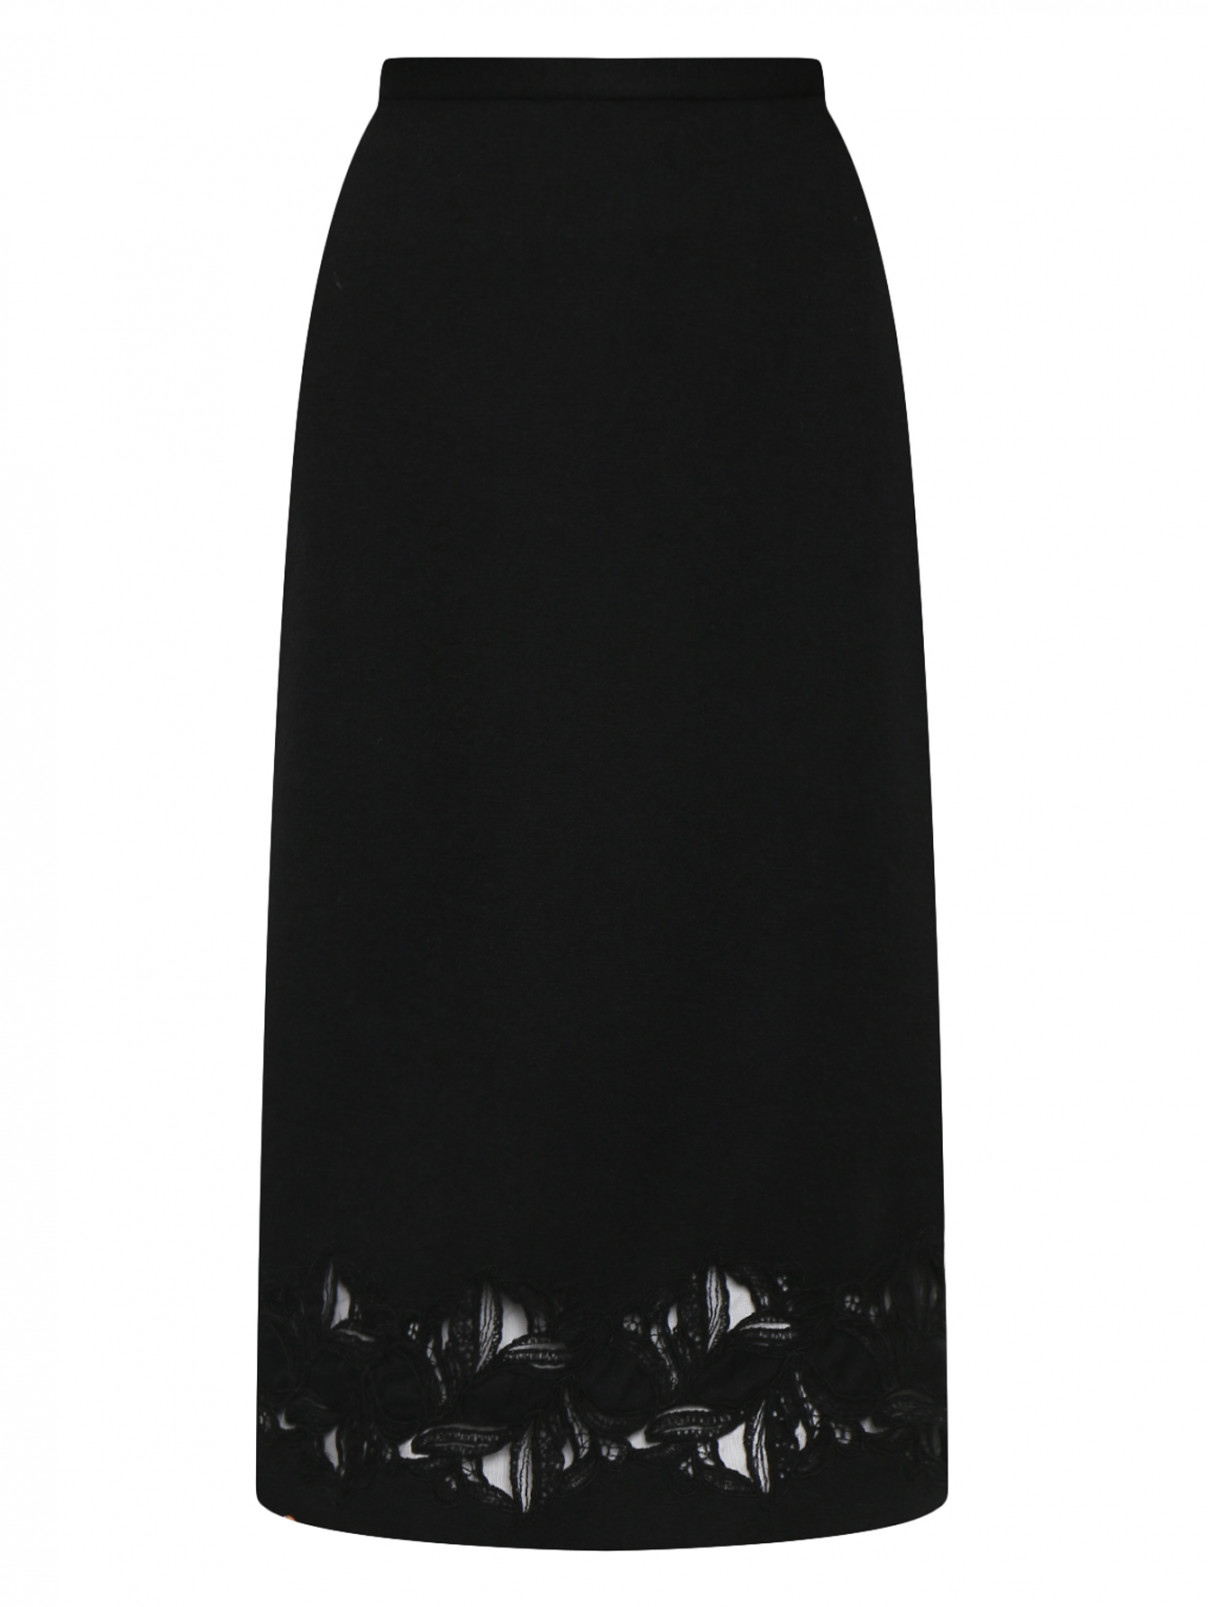 Юбка из шерсти, шелка и кашемира с кружевом Ermanno Scervino  –  Общий вид  – Цвет:  Черный